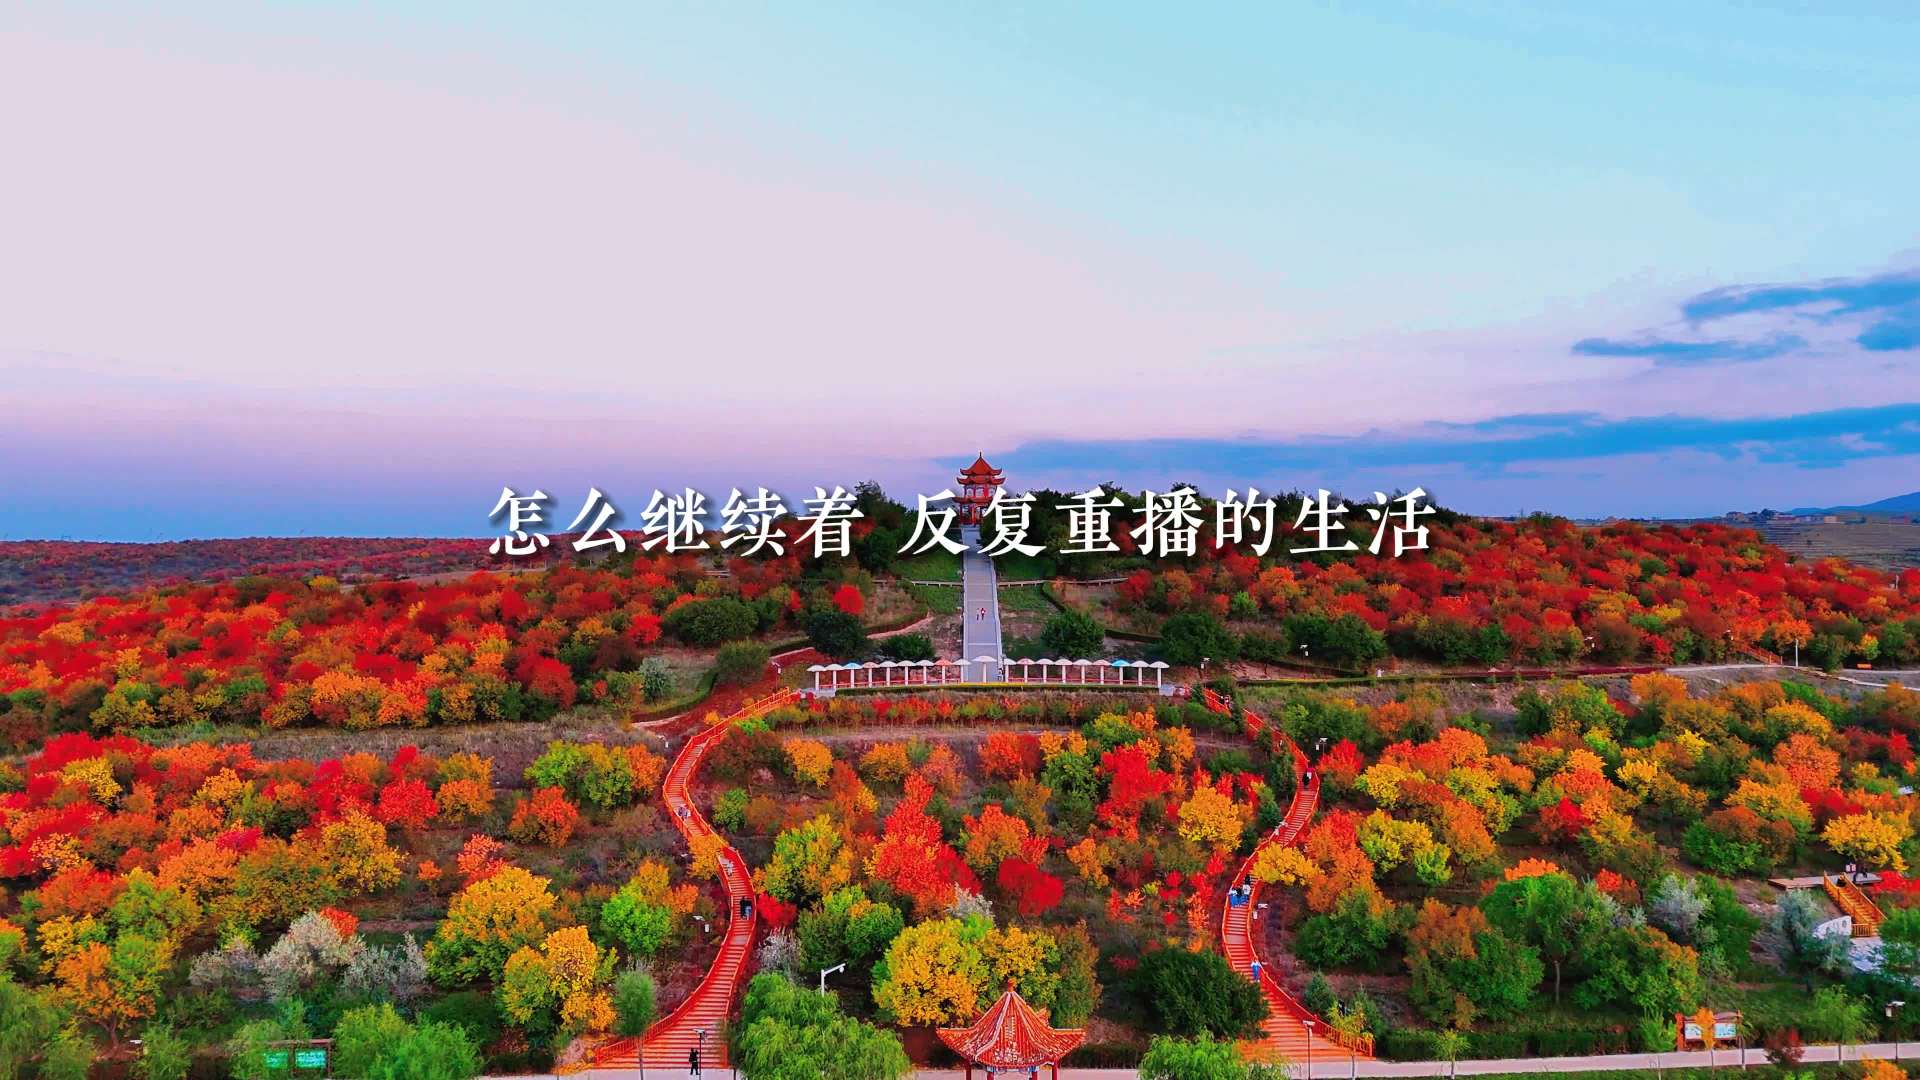 【风景】海原县牌路山森林公园